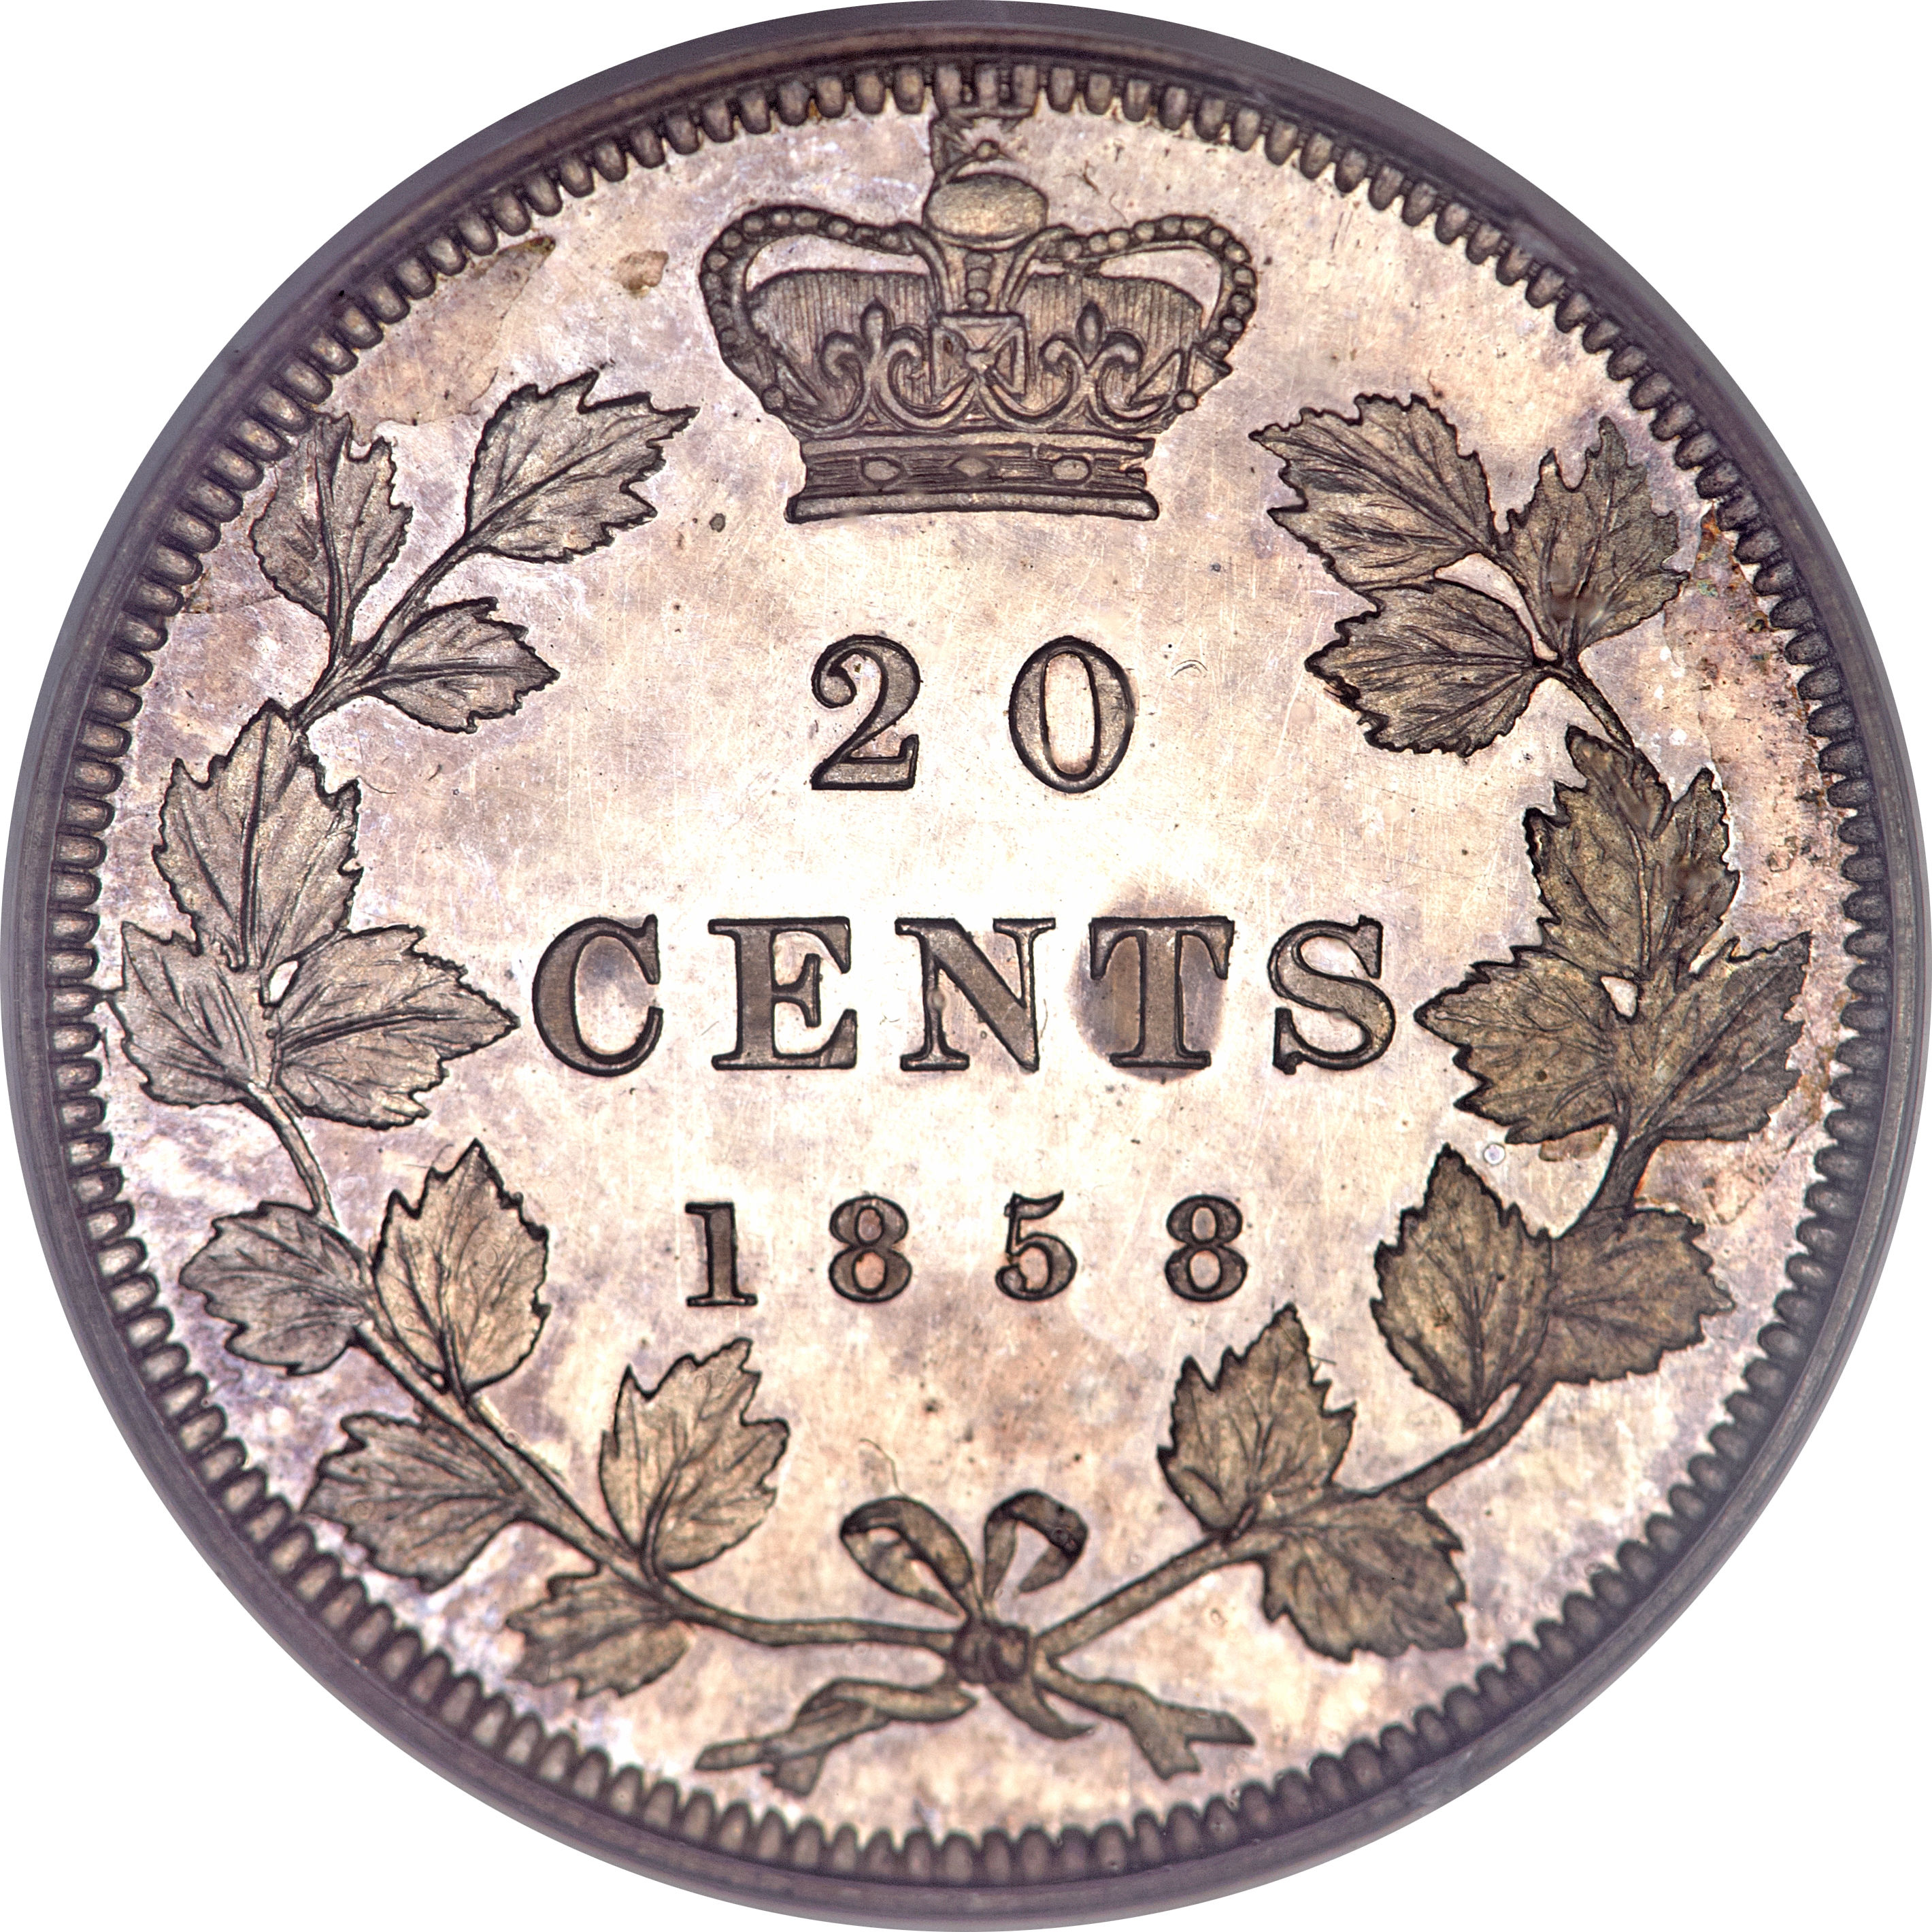 twenty cent piece (united states coin)